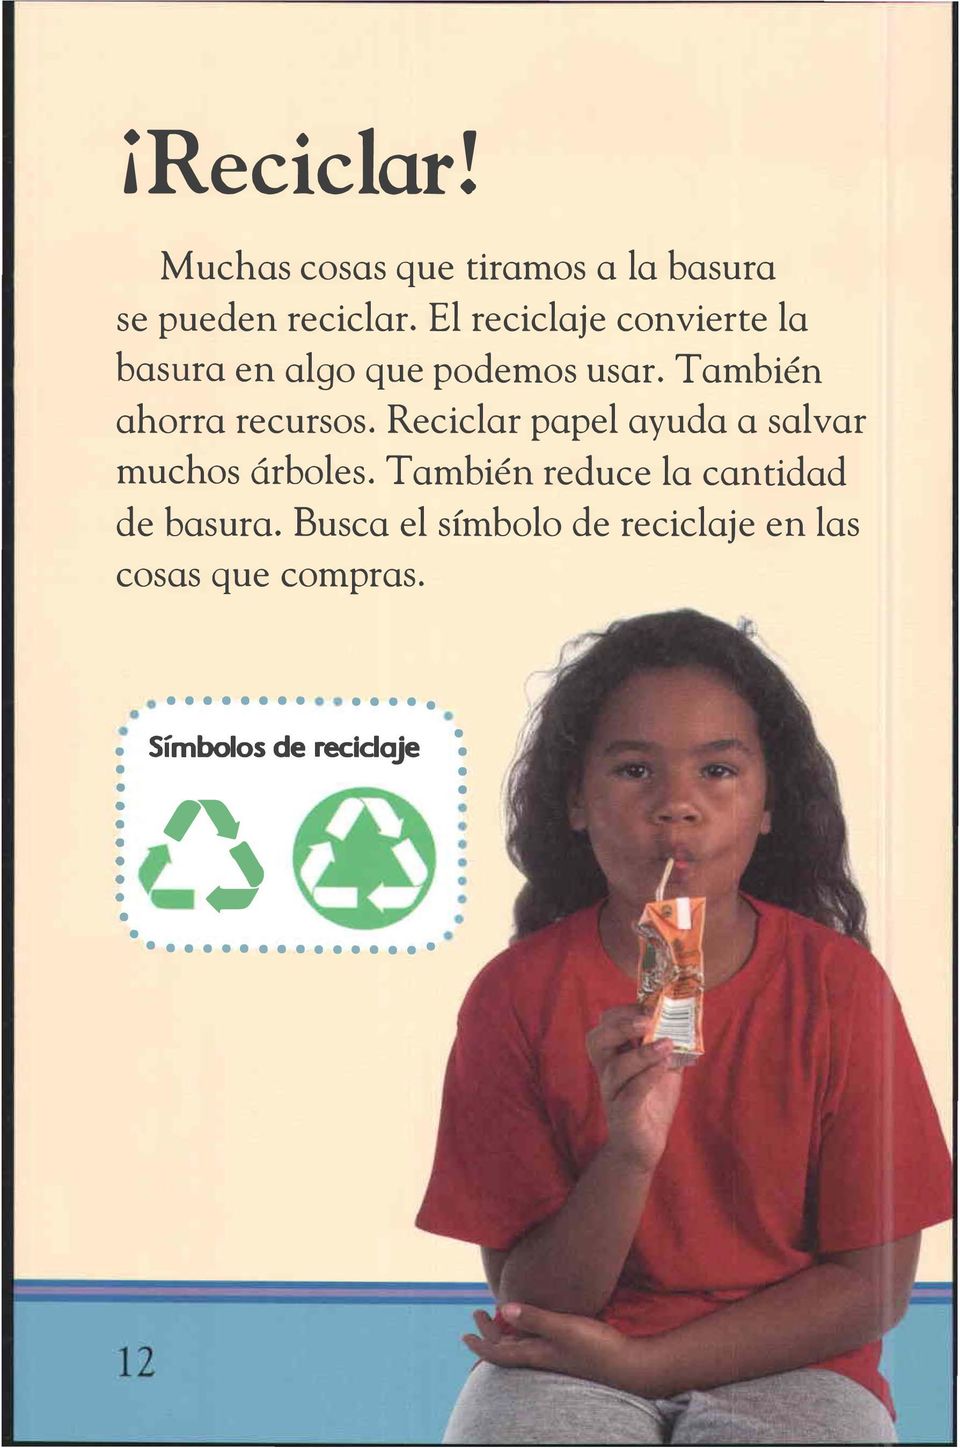 Reciclar papel ayuda a salvar muchos árboles. También reduce la cantidad de basura.